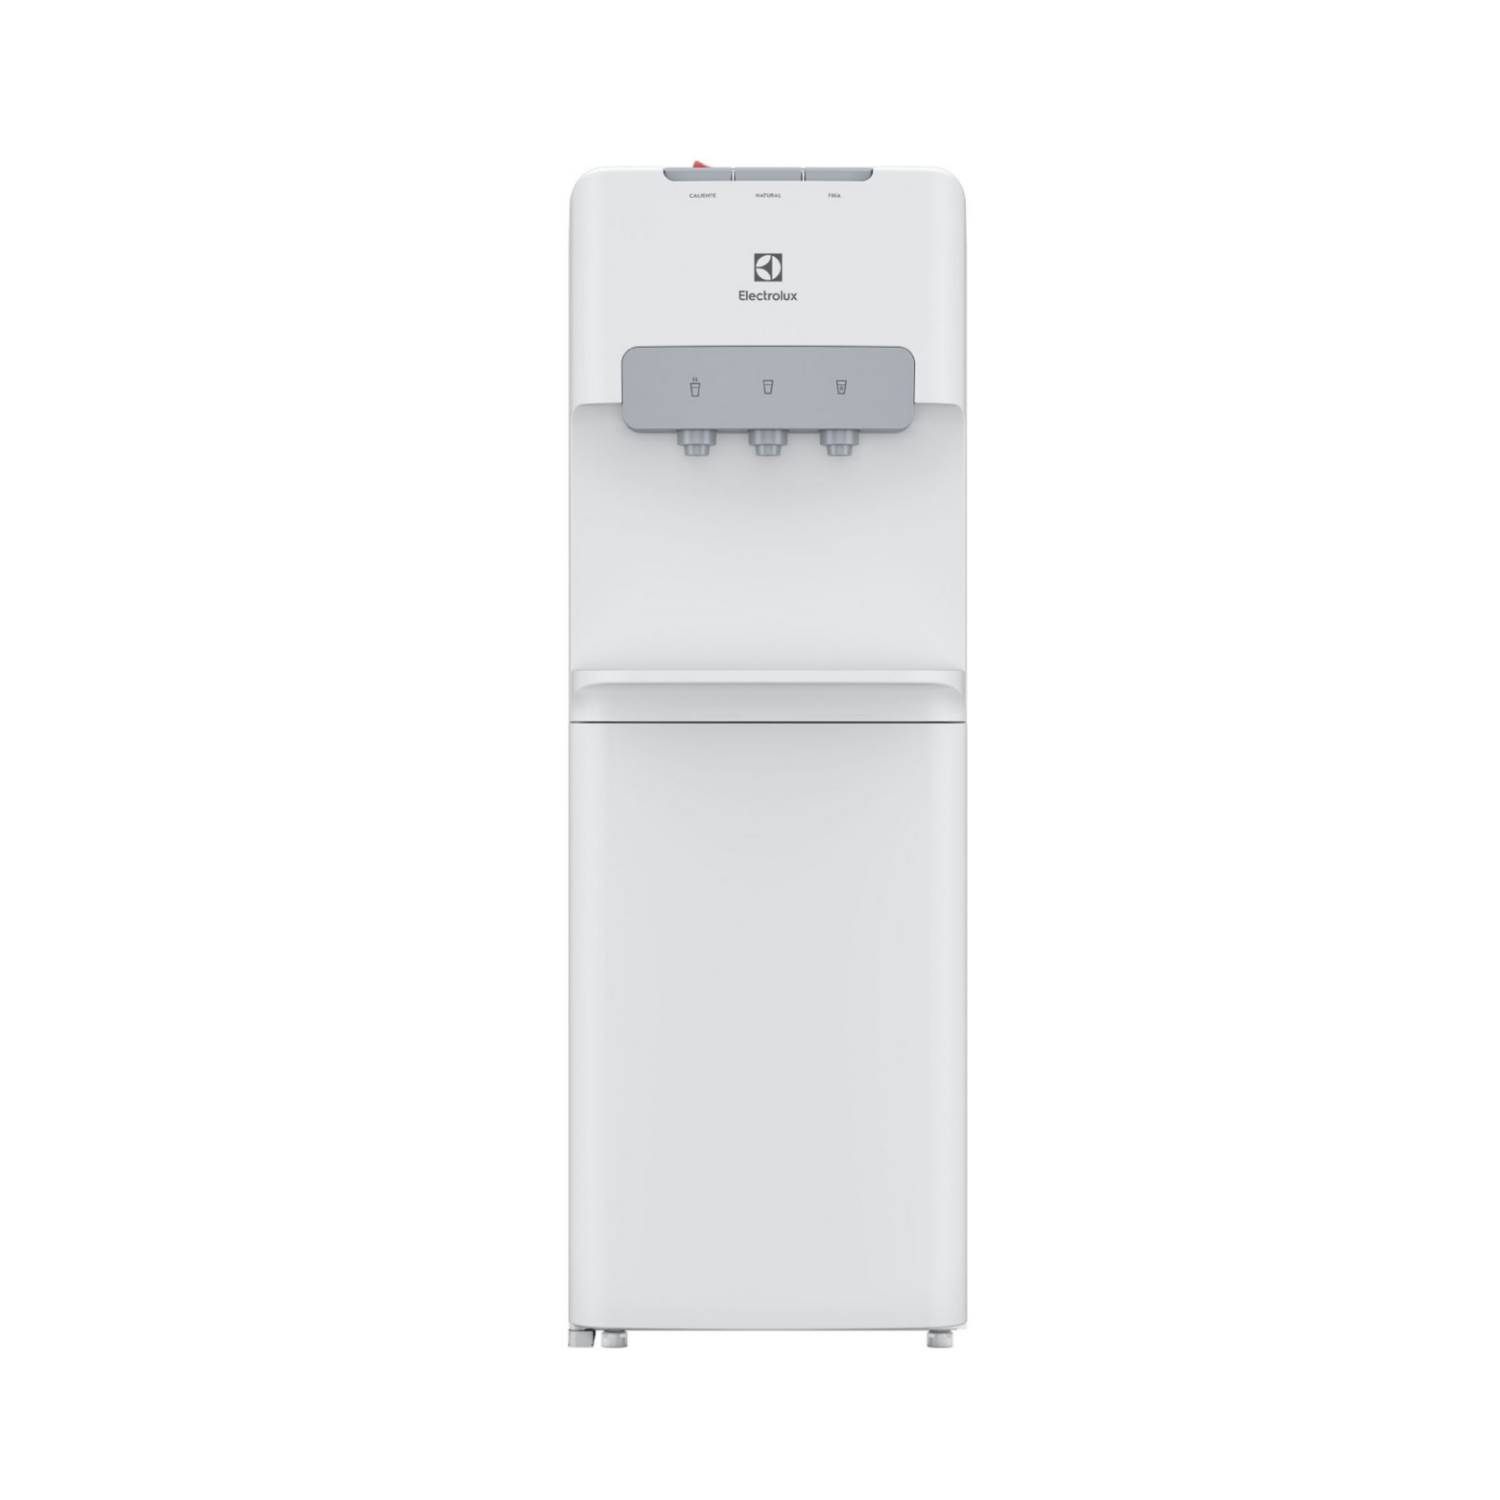 Dispensador de Agua Fría y Caliente Empresarial con Refrigerador Mabe MABE